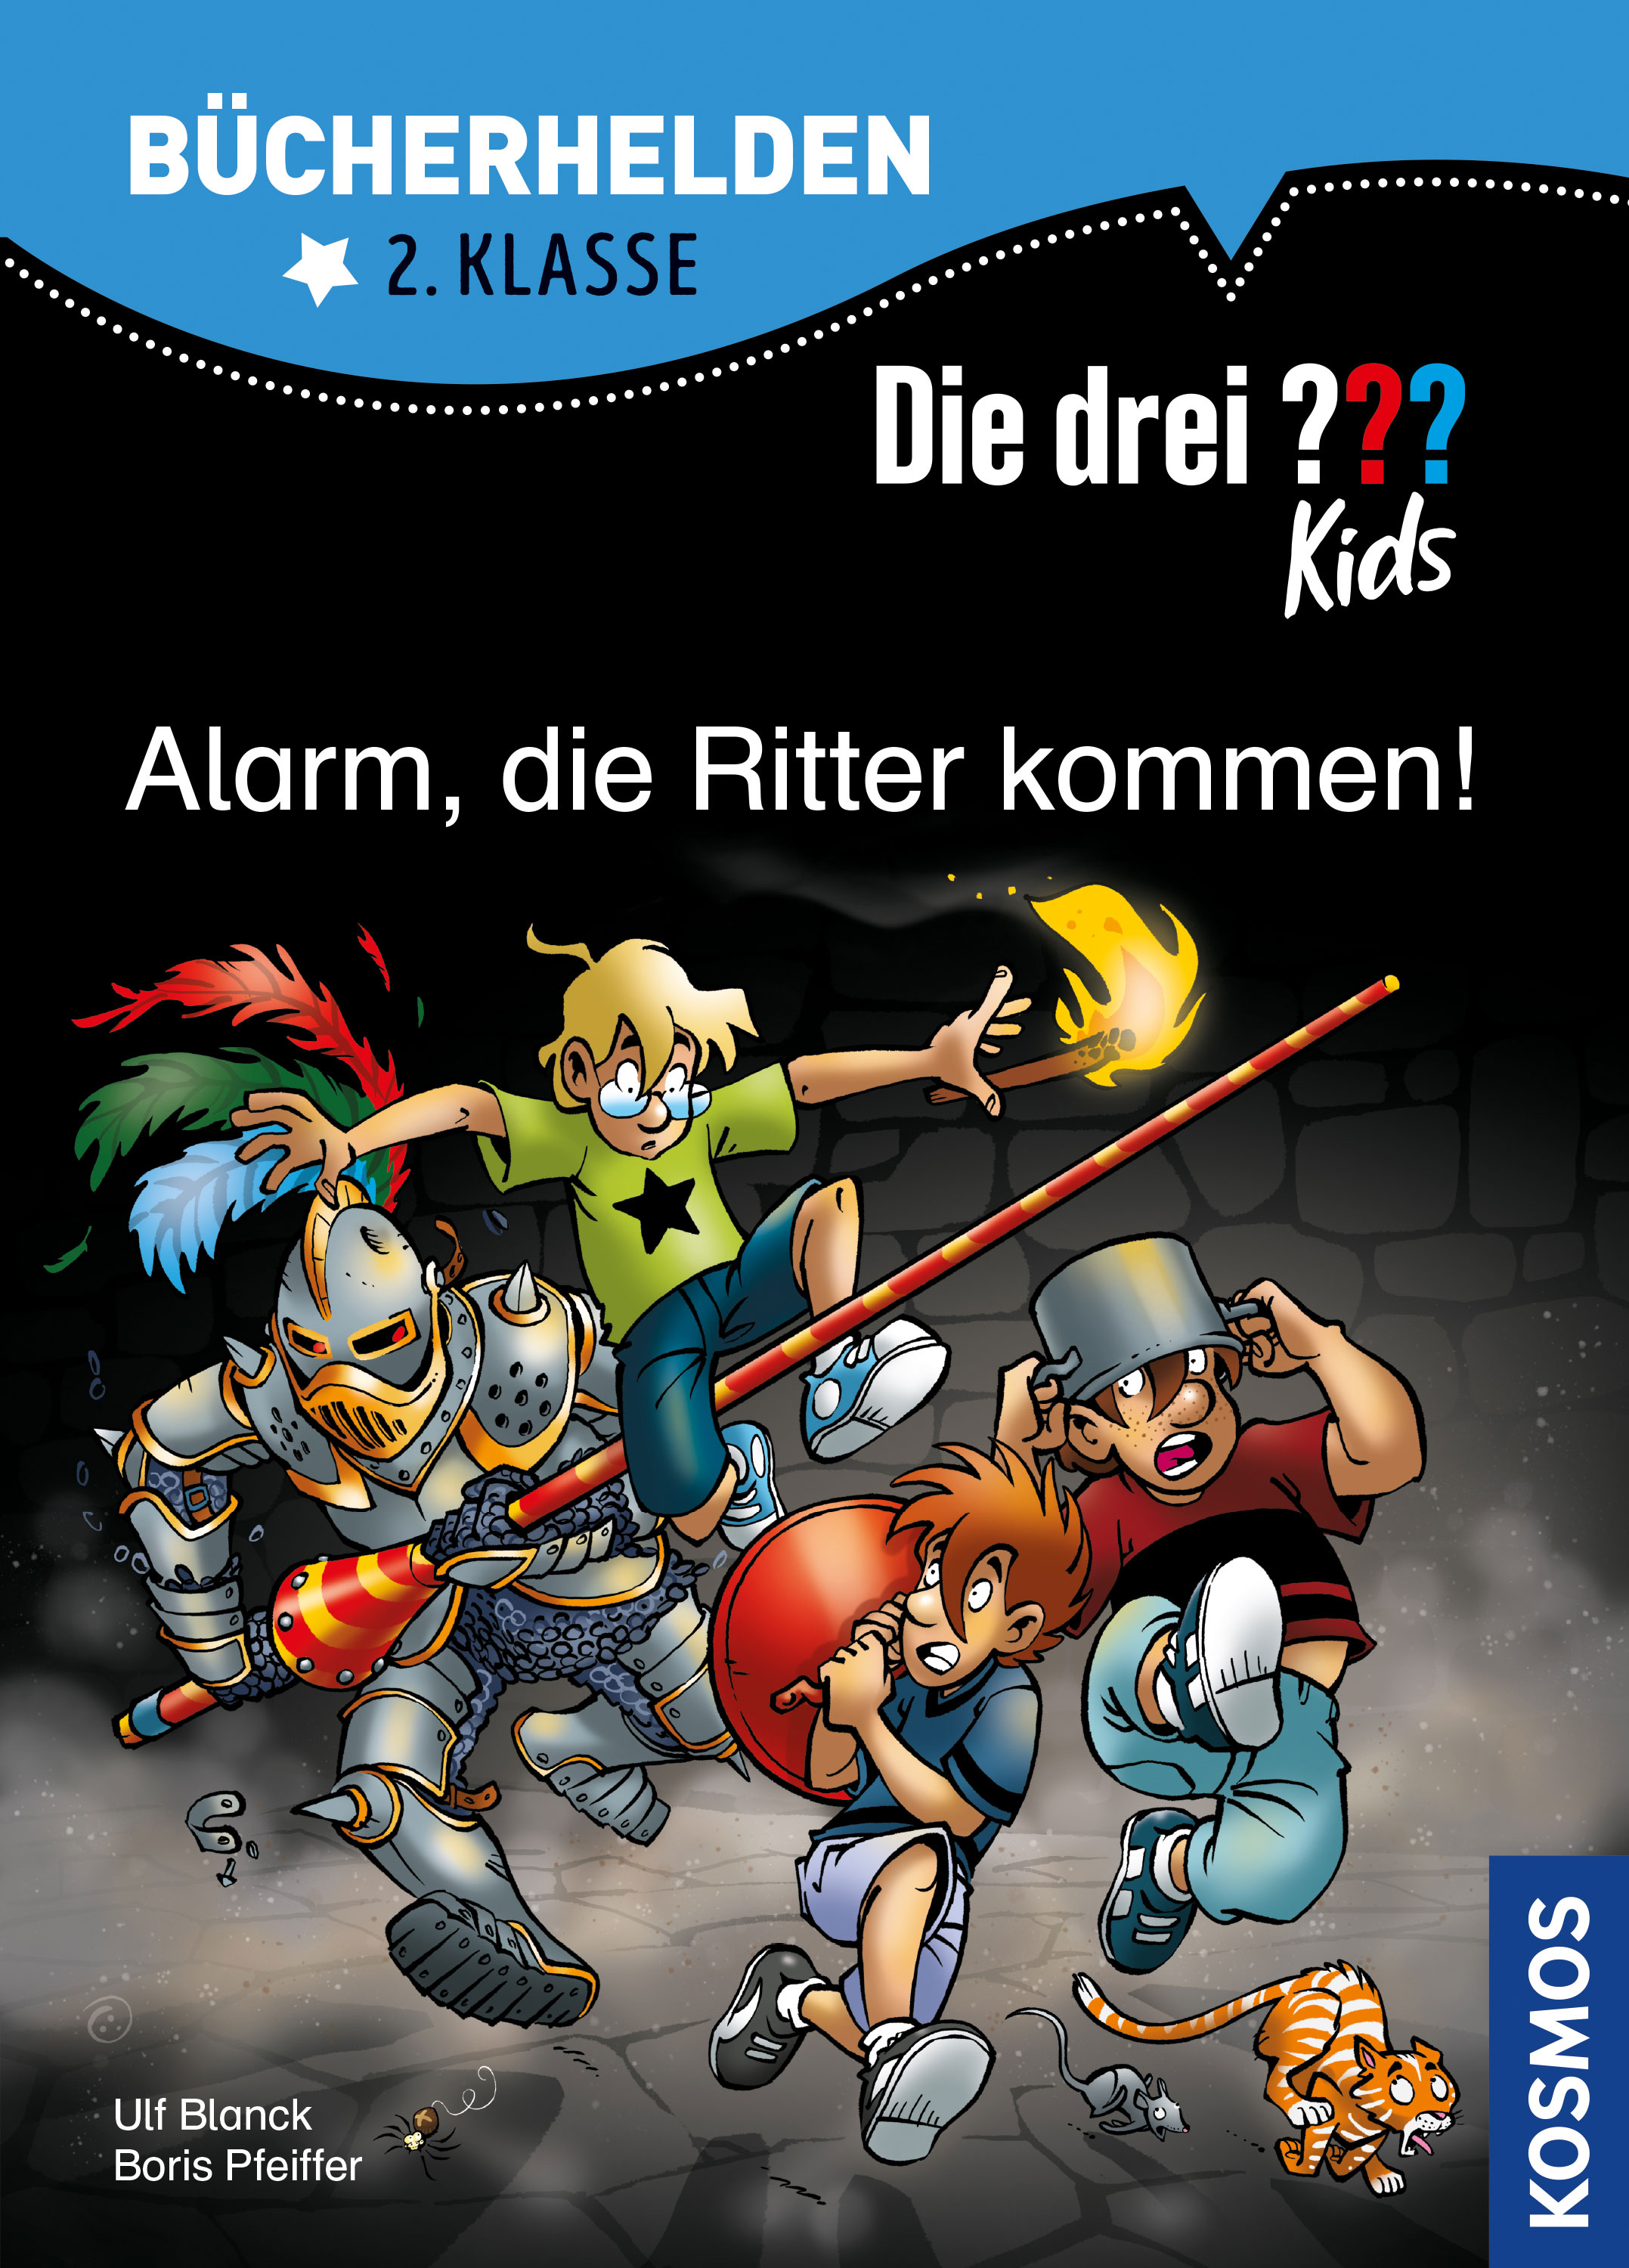 Die Drei ??? (Fragezeichen) Kids, Buch-Special: Alarm, die Ritter kommen! (Bücherhelden 2. Klasse) 